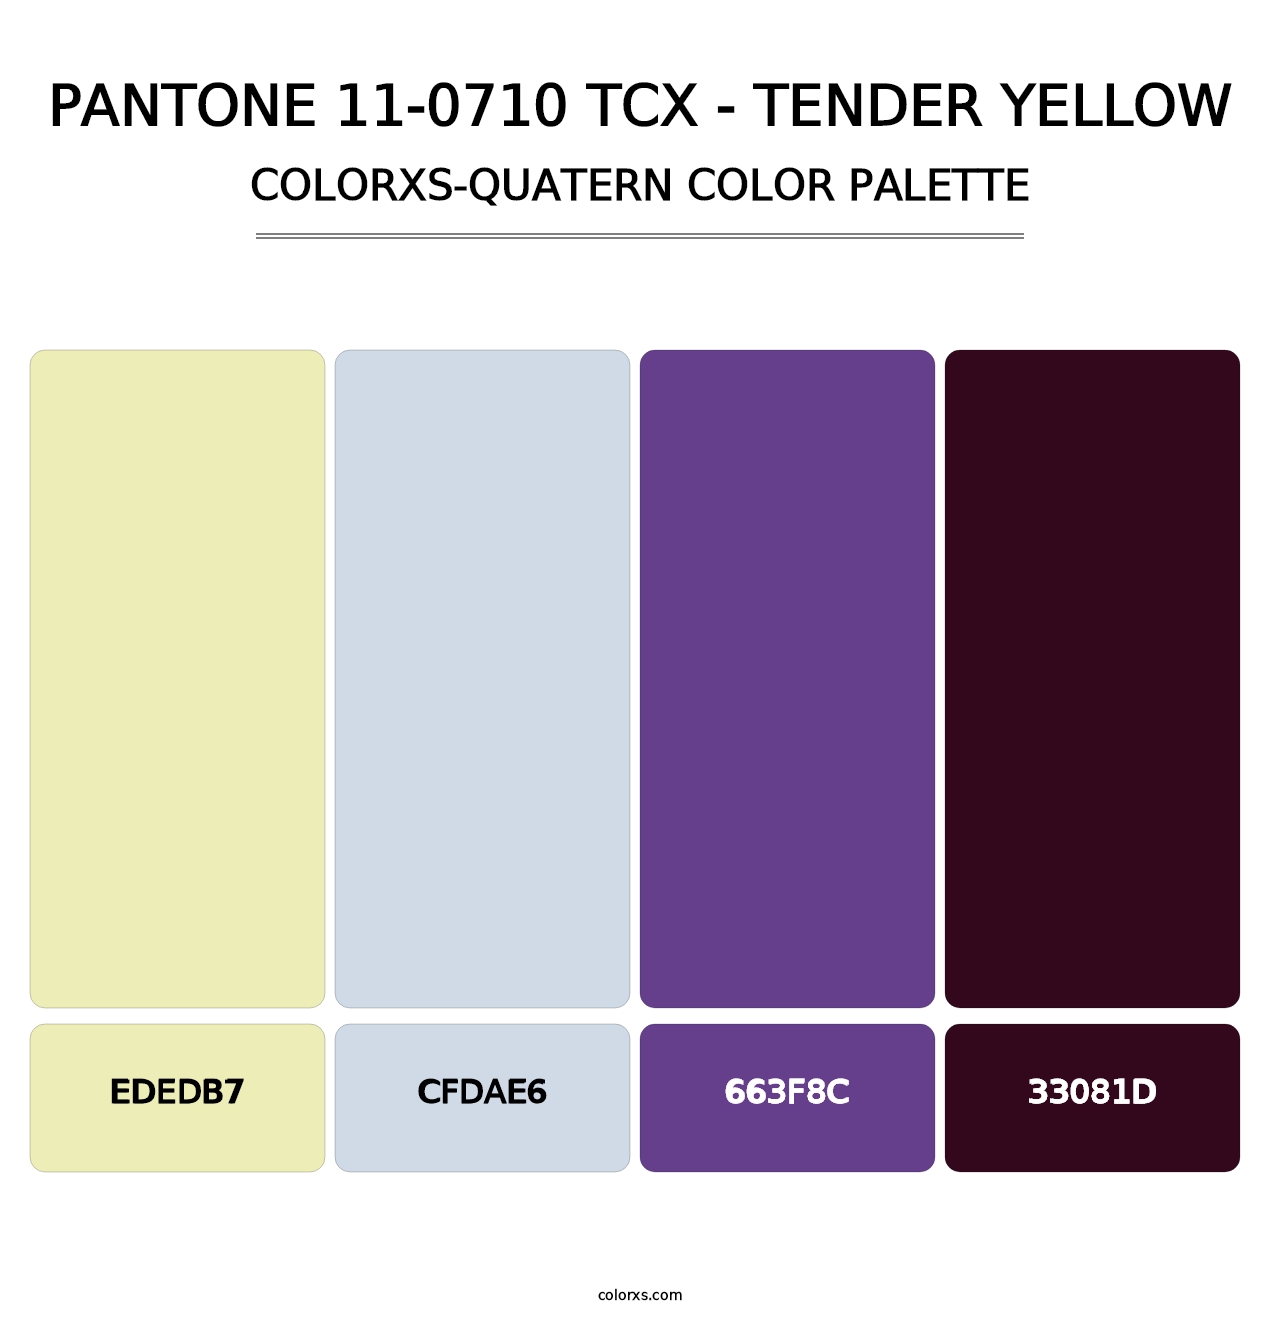 PANTONE 11-0710 TCX - Tender Yellow - Colorxs Quatern Palette